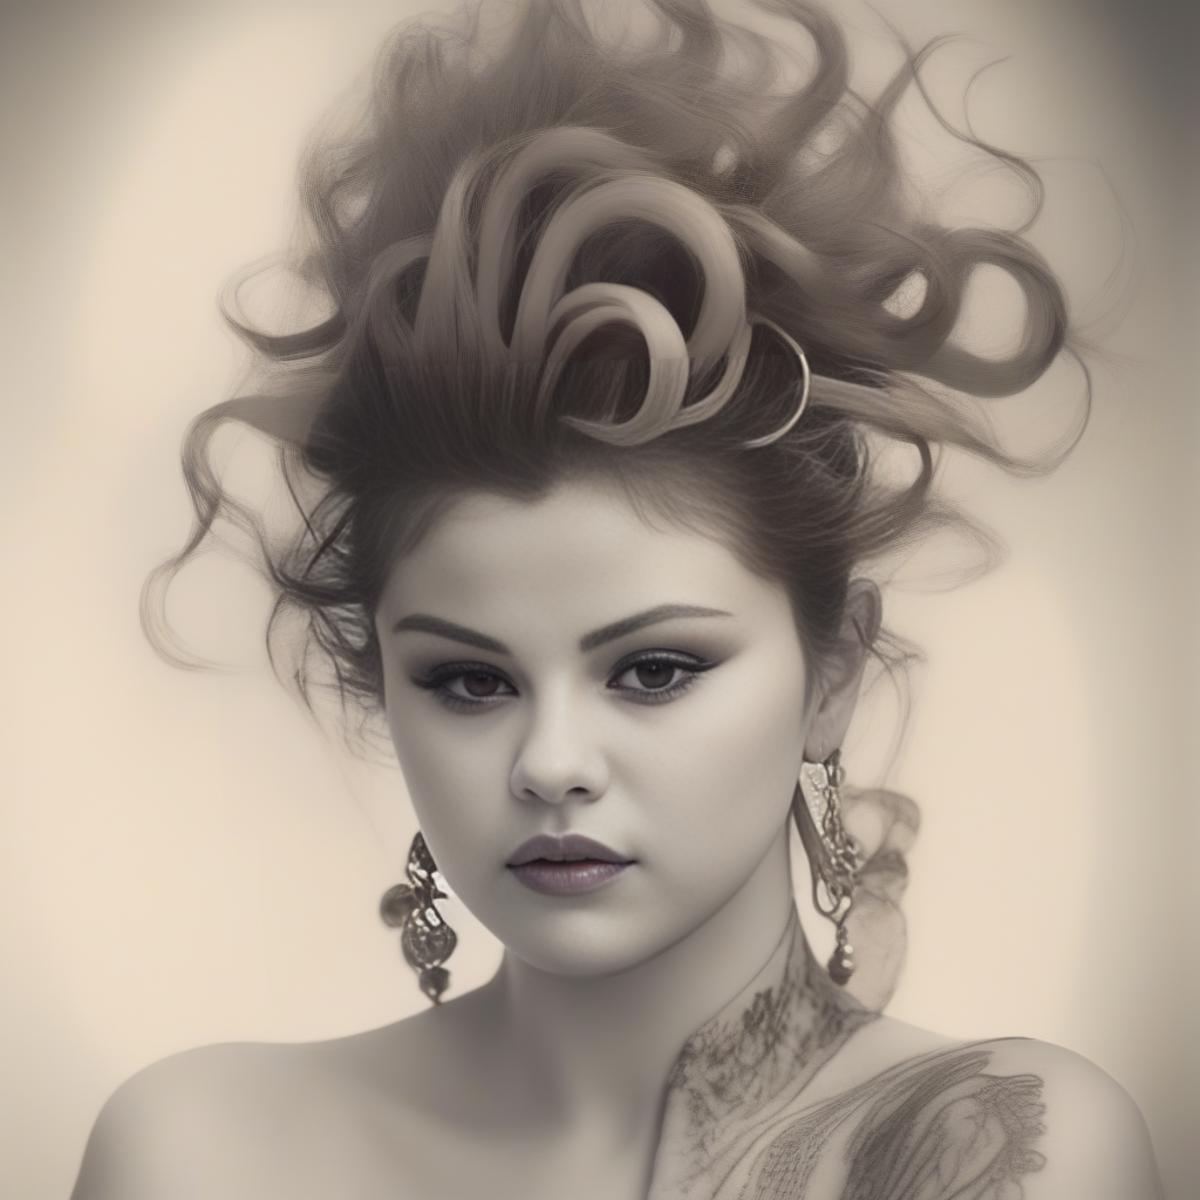 Selena Gomez image by parar20